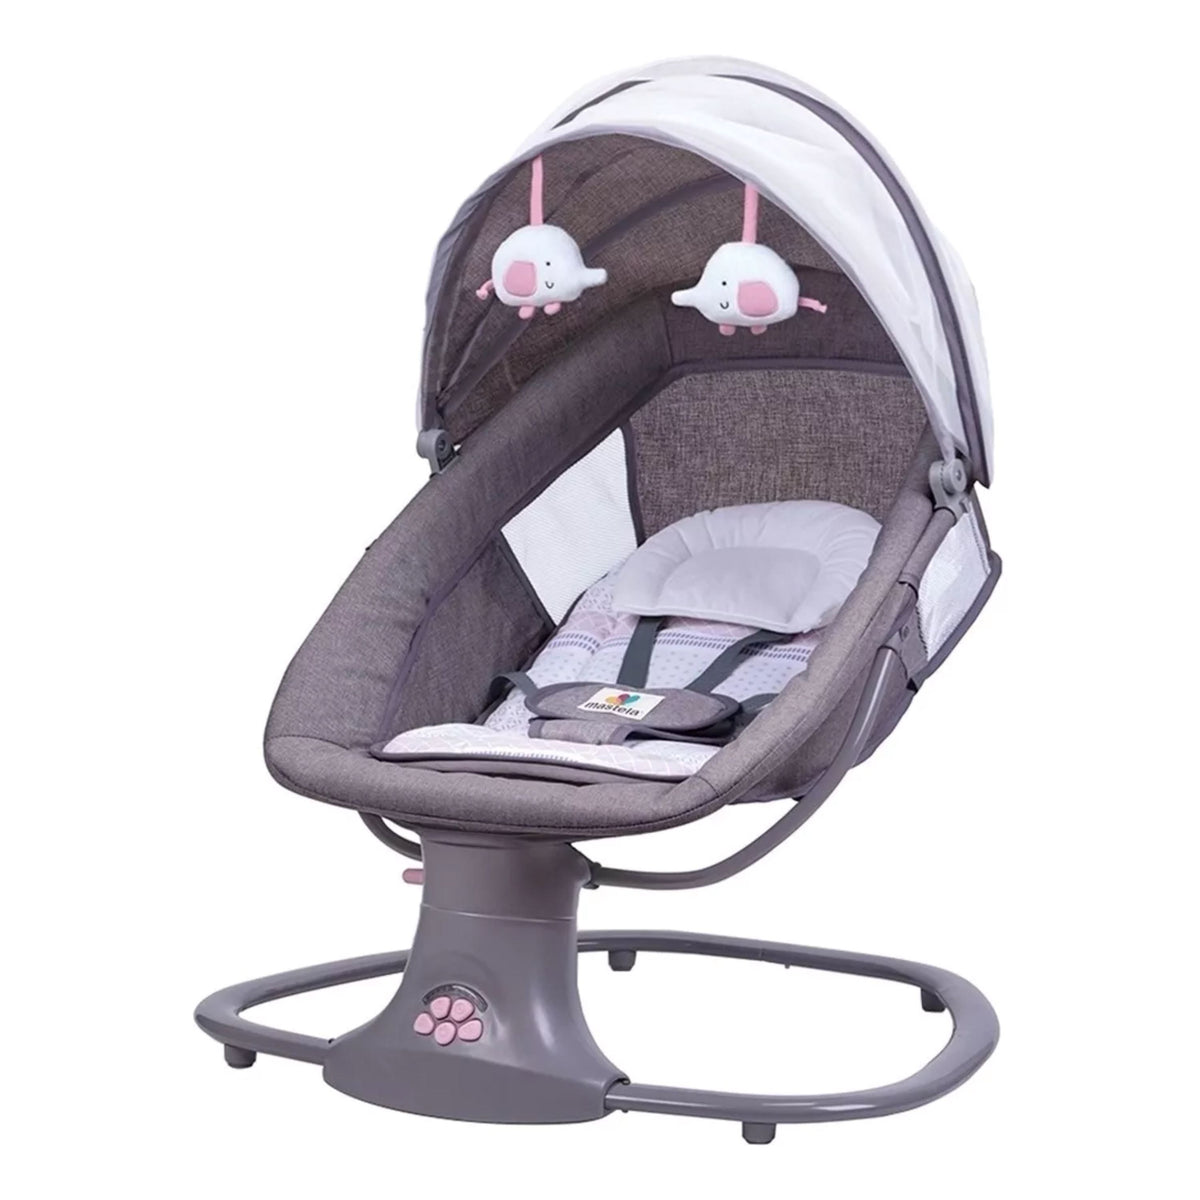 Cadeira de Balanço para Bebê Ultra Tech Bambino - Conforto e Qualidade Cadeira de Balanço Infantil Bambino Loja do Bambino Rosa 